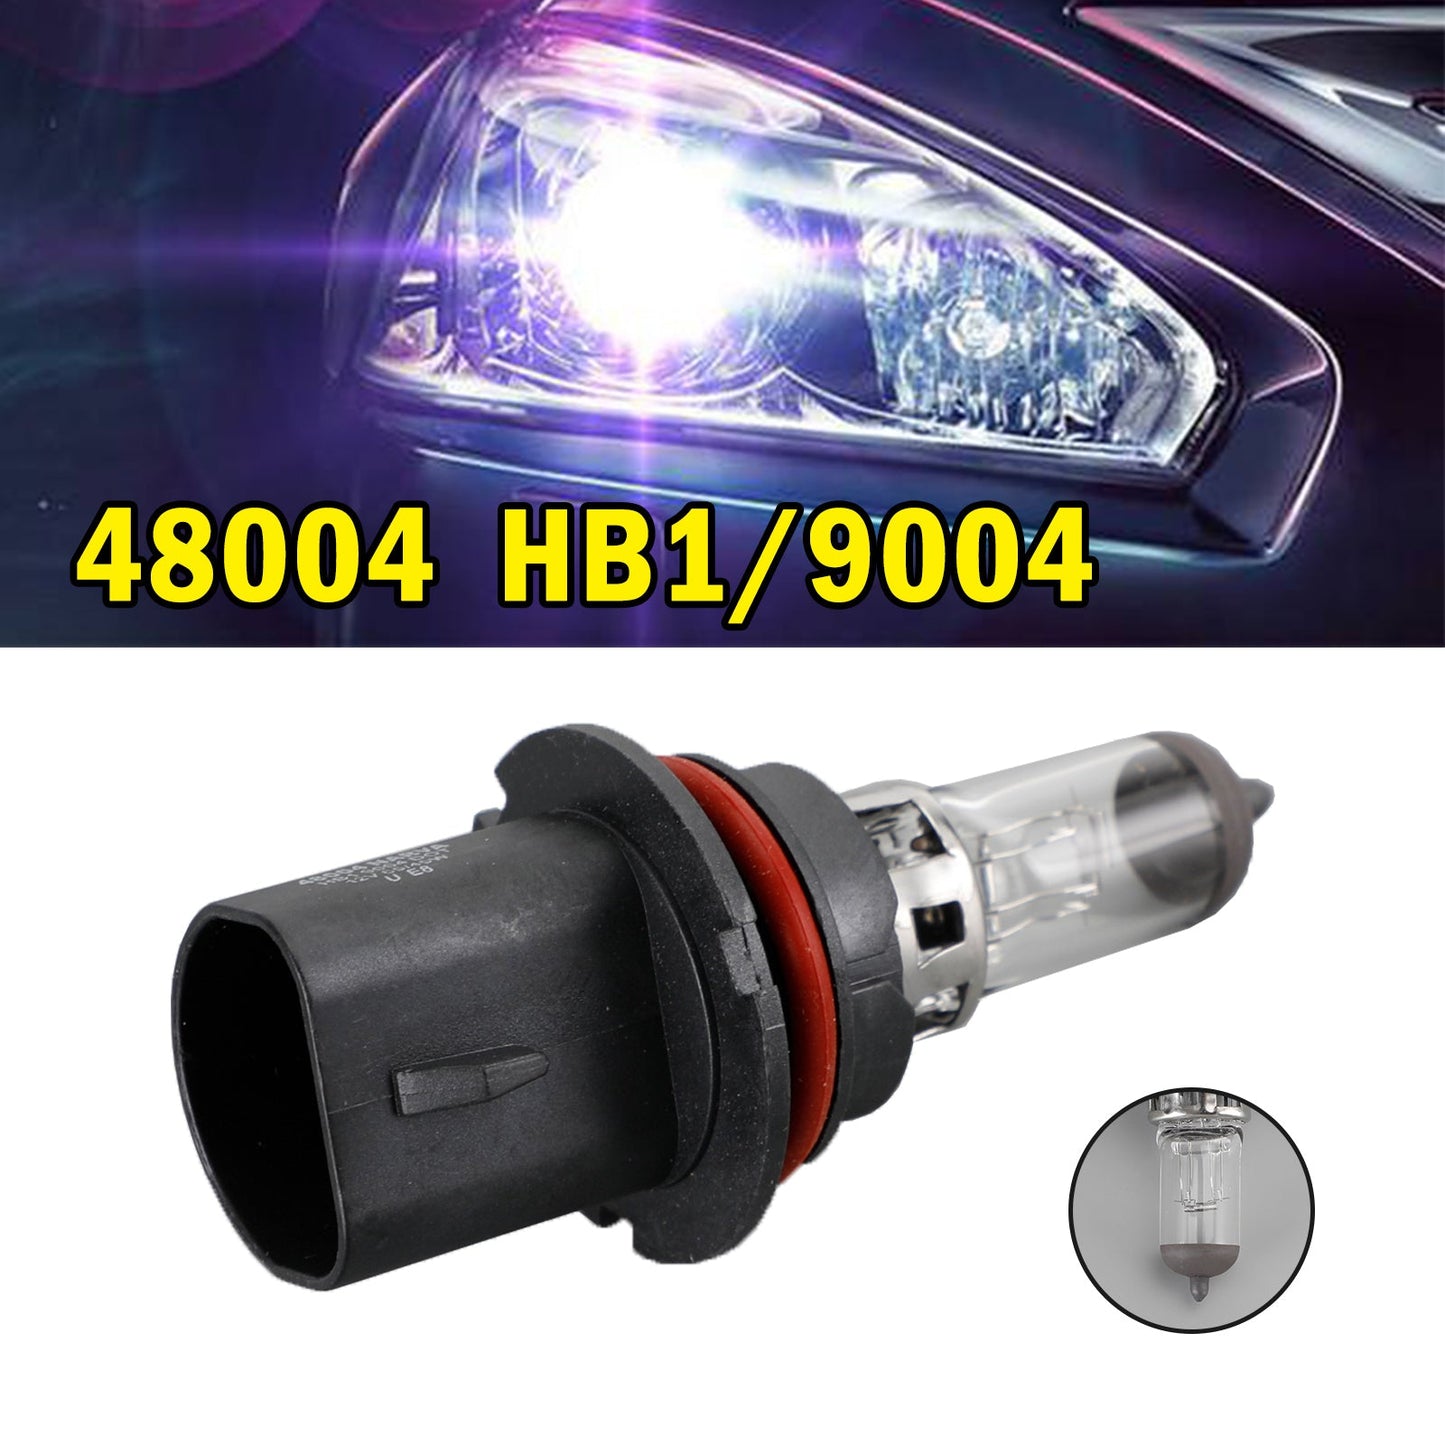 H1 RPW 91514 For NARVA Range Power White Car Headlight Lamp 12V55W P14.5s